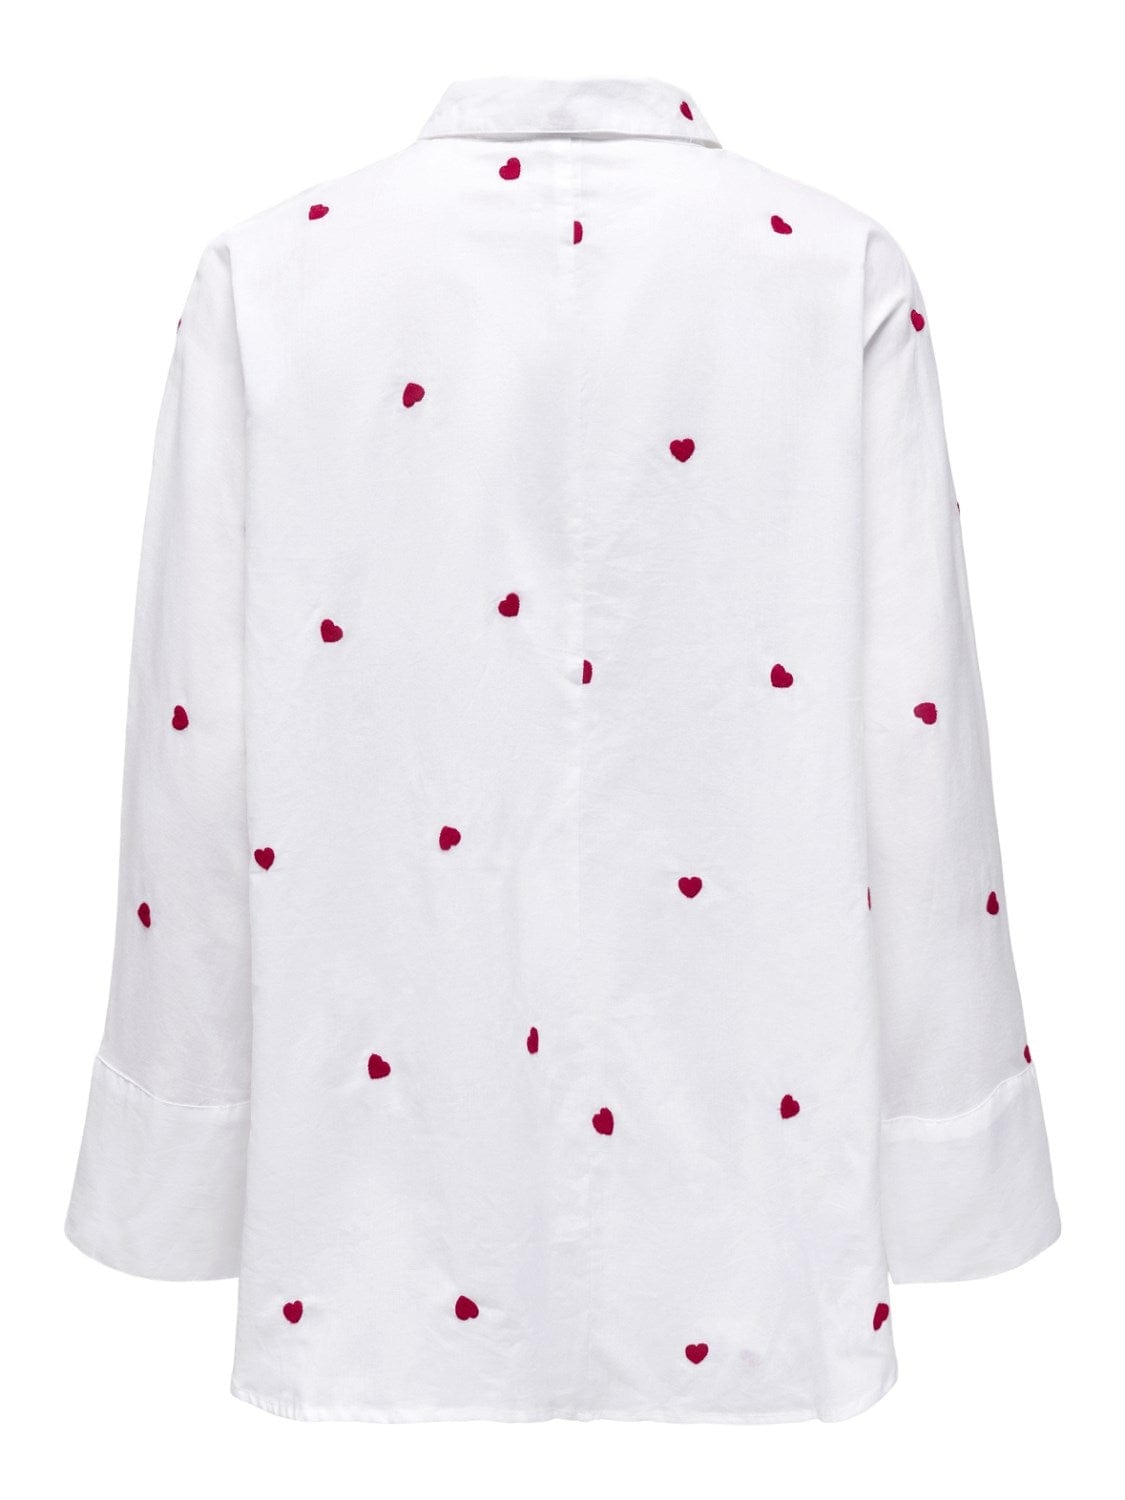 Only Overdele Hvid skjorte med Røde Hjerter - Lina - Only